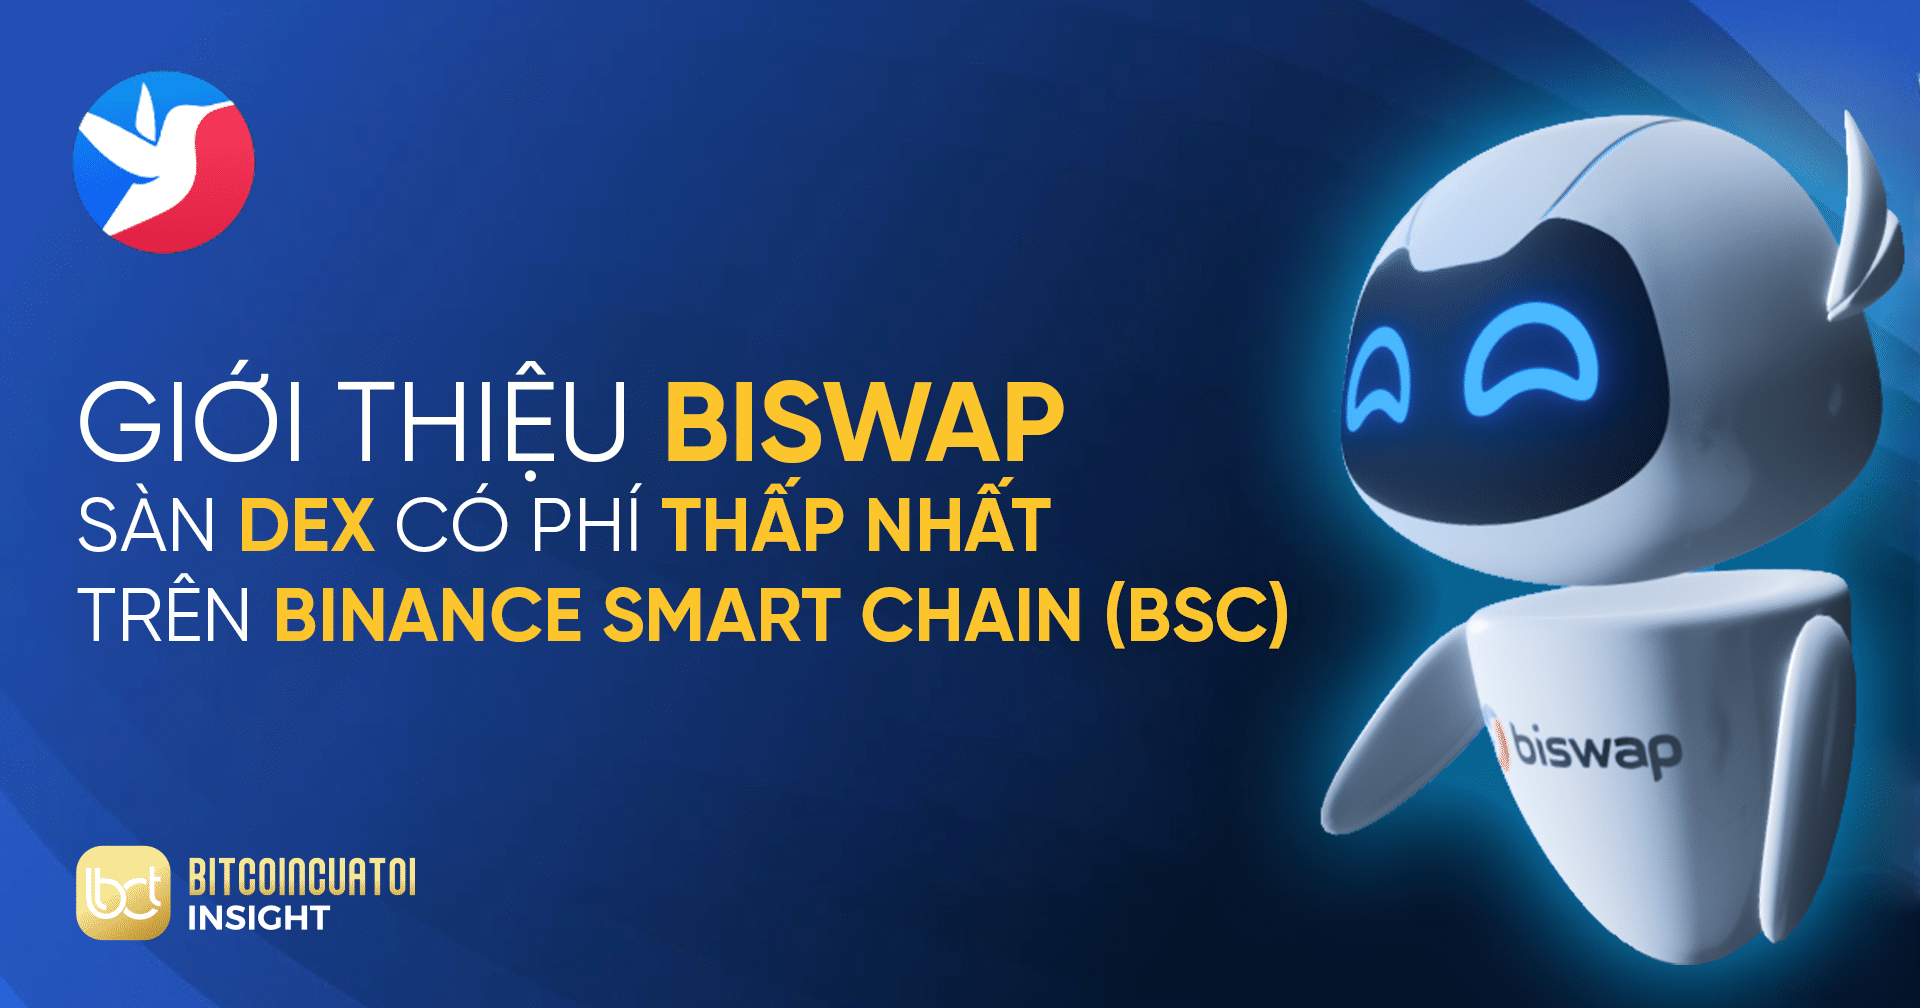 Giới thiệu Biswap - Sàn DEX có phí thấp nhất trn Binance ...